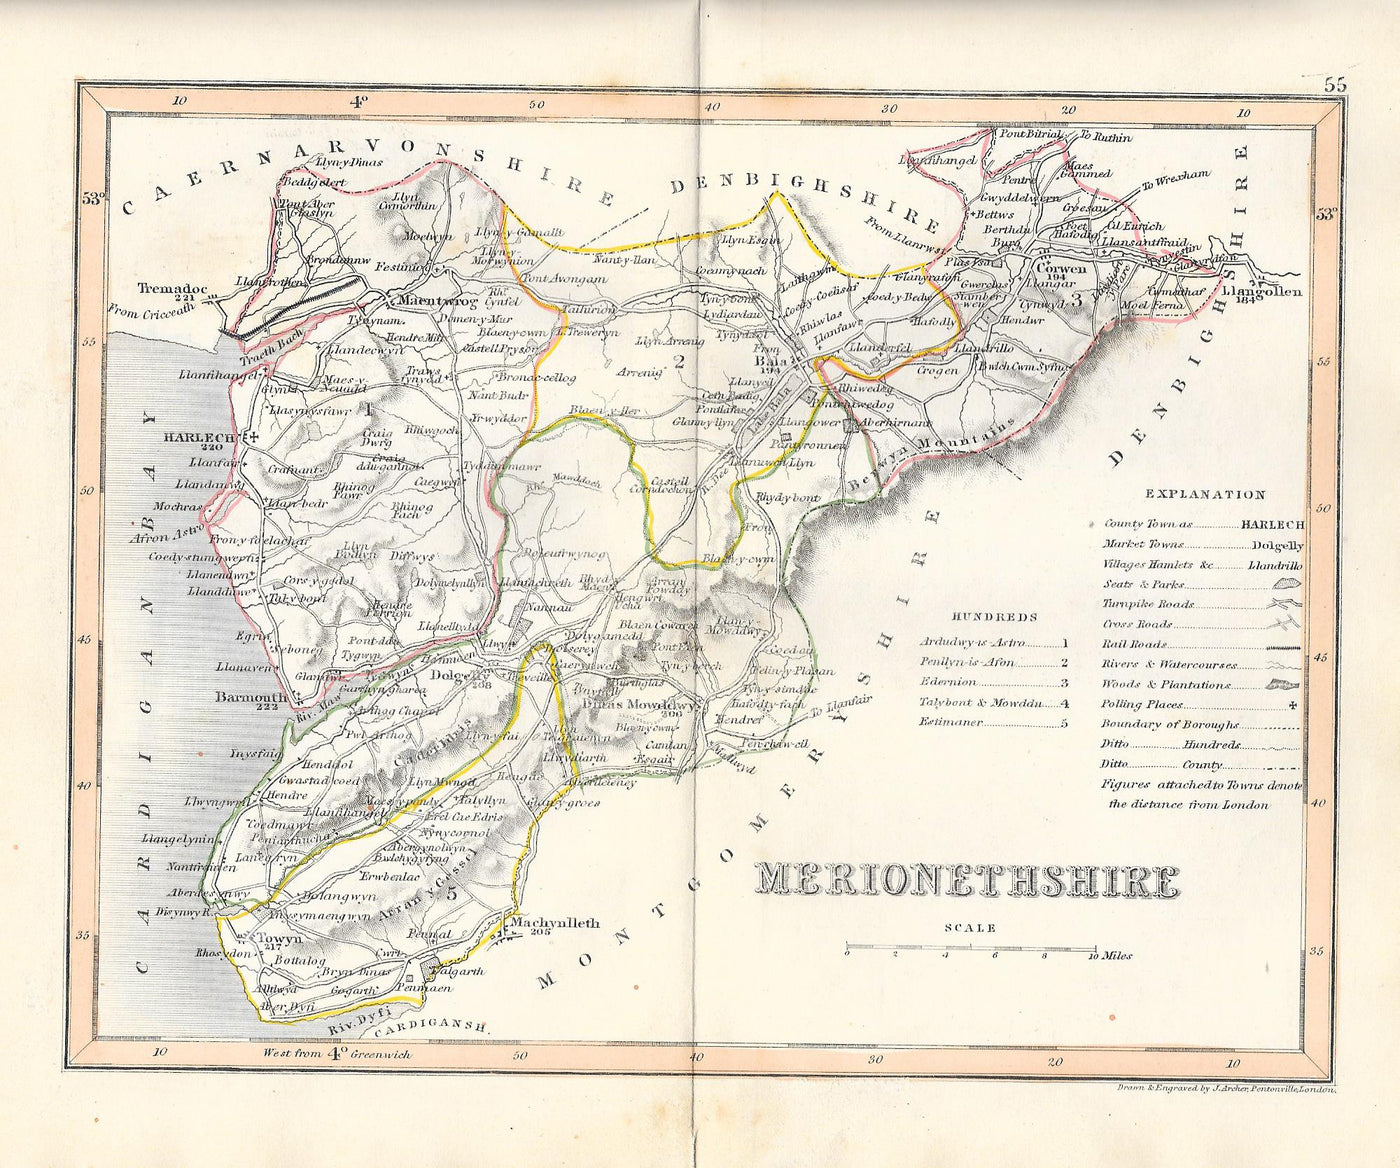 Merionethshire Clwyd Cymru Wales antique map